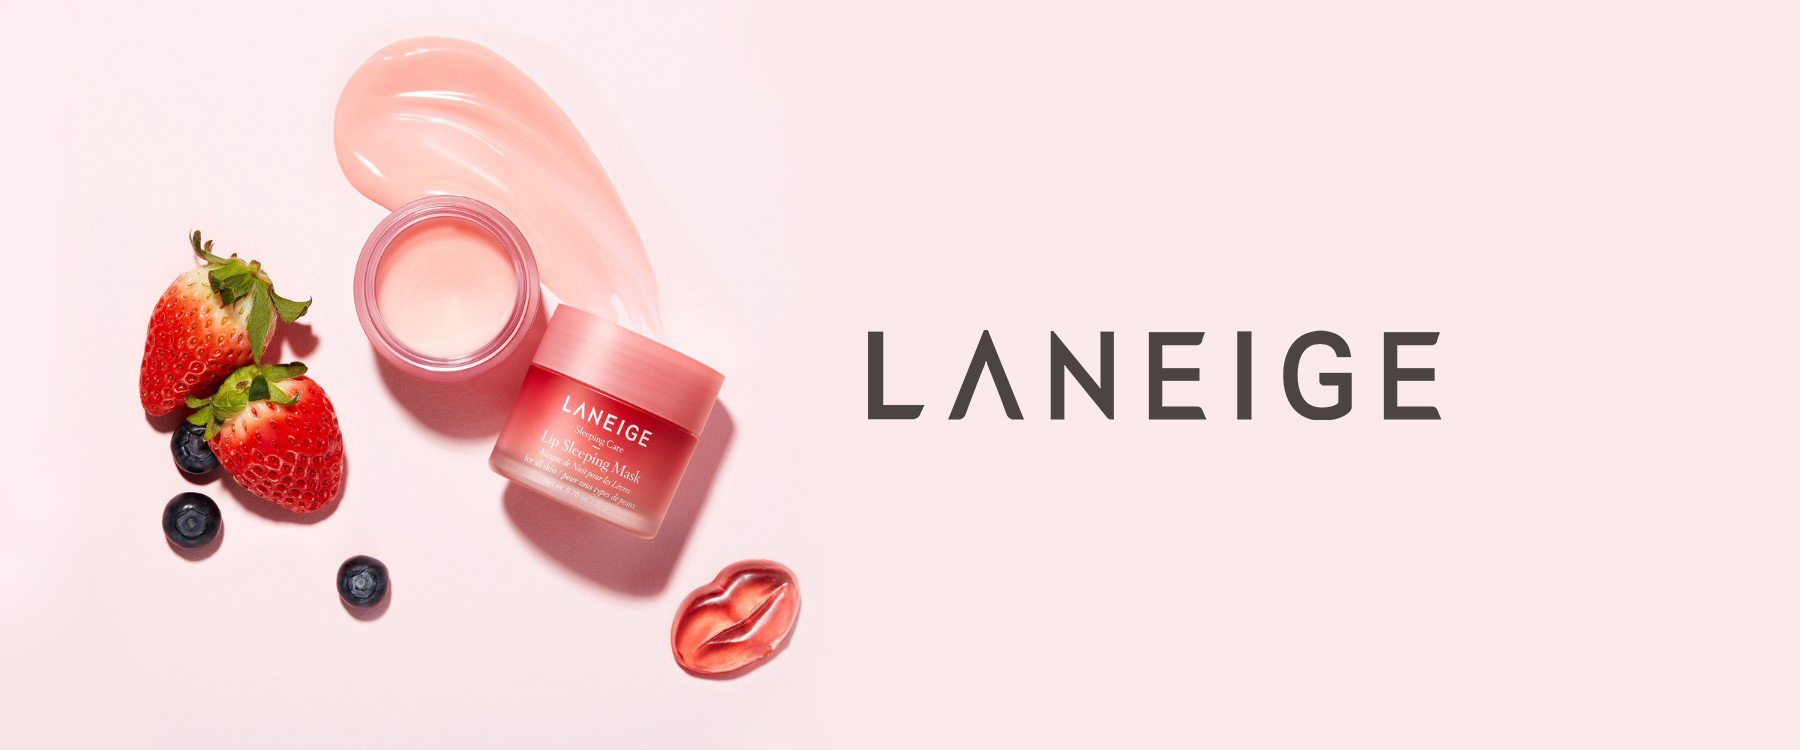 Laneige Korean beauty brand